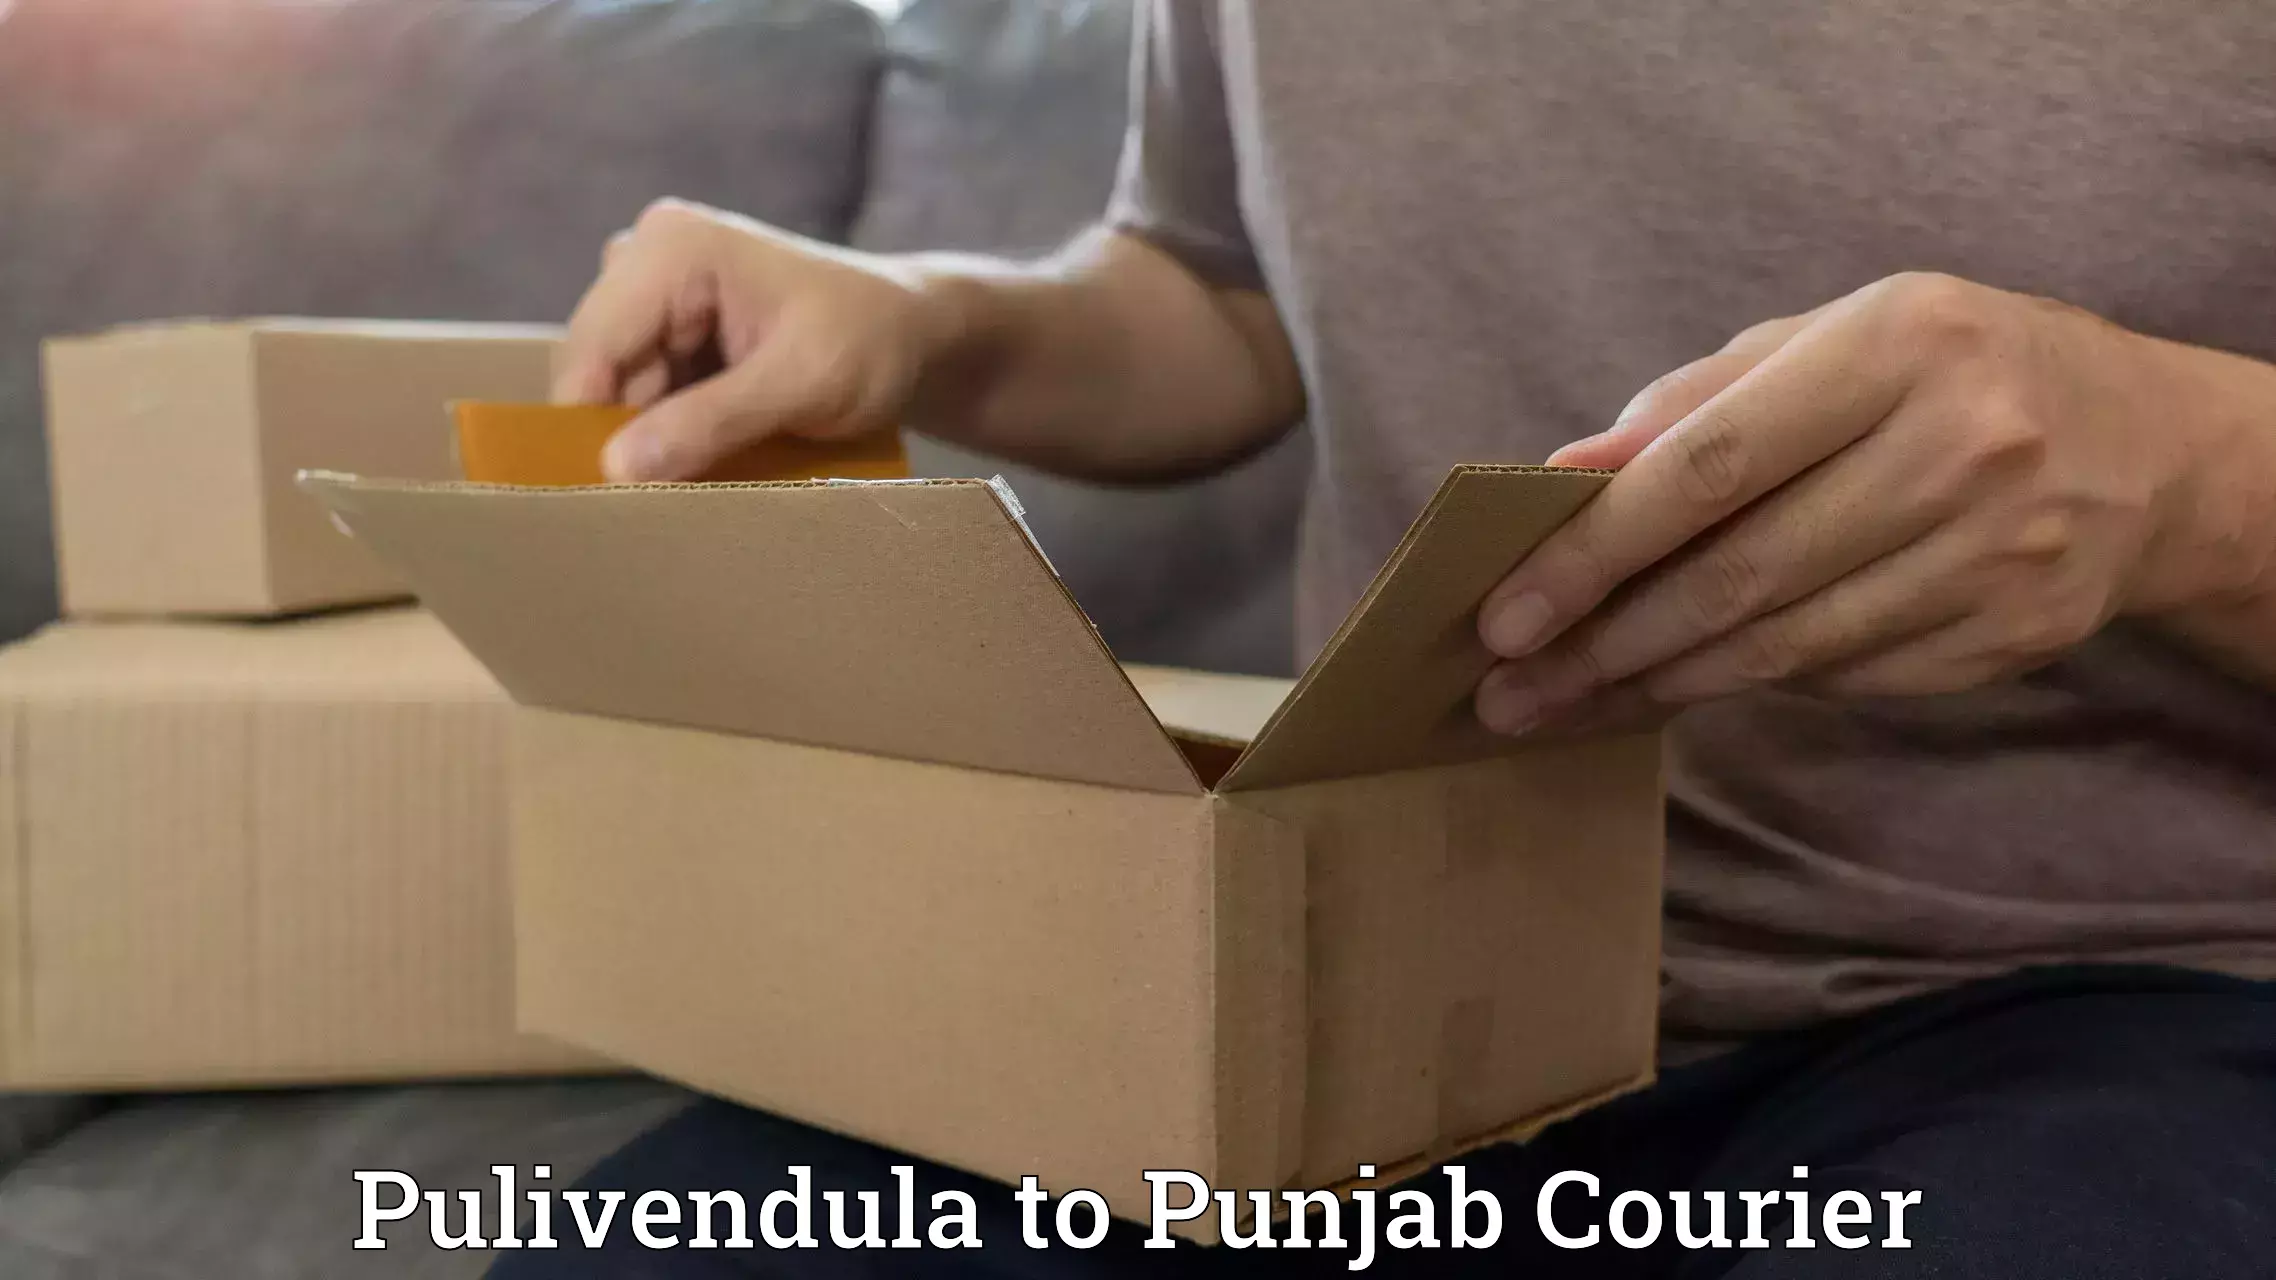 Customizable shipping options Pulivendula to Patiala